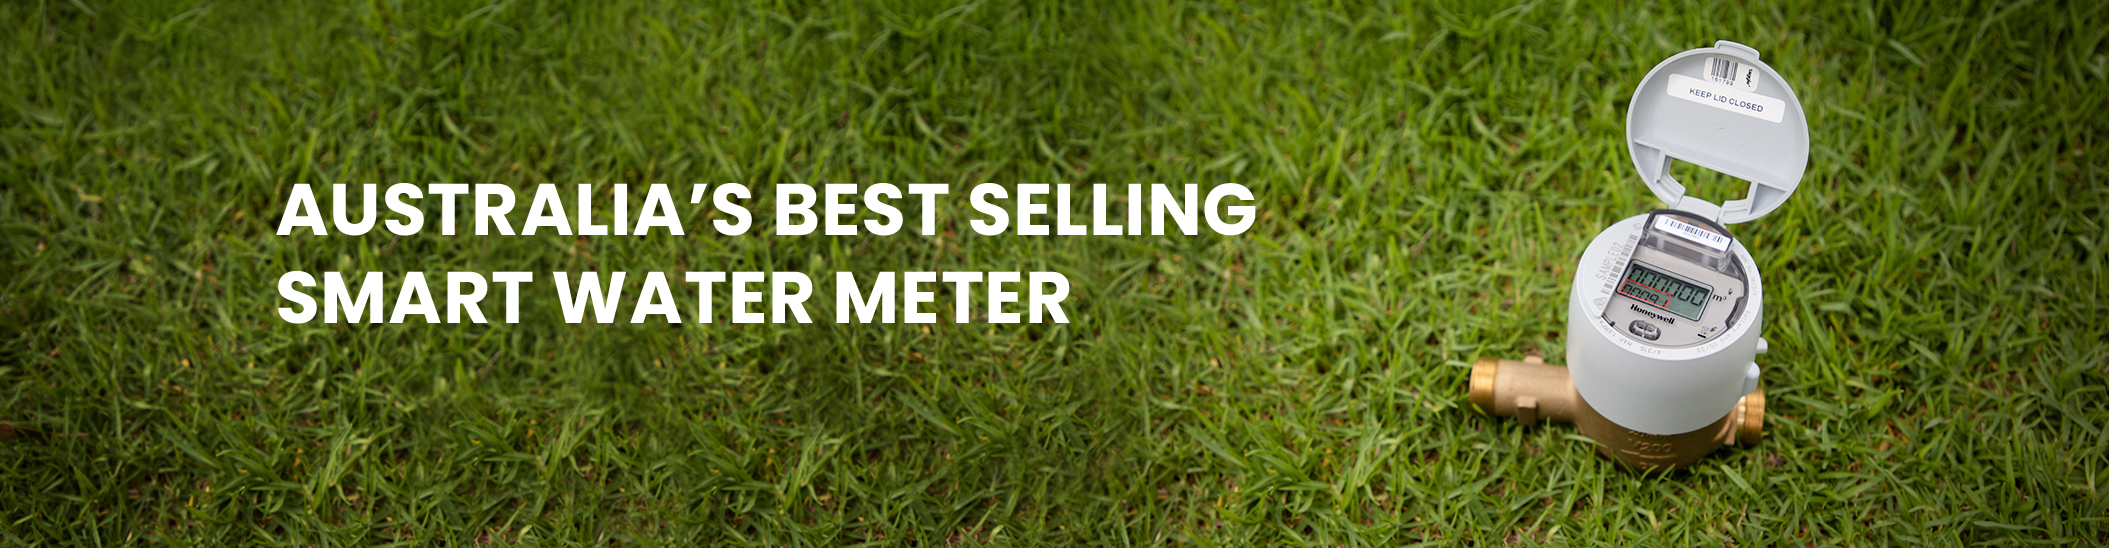 Smart Water Meter best selling